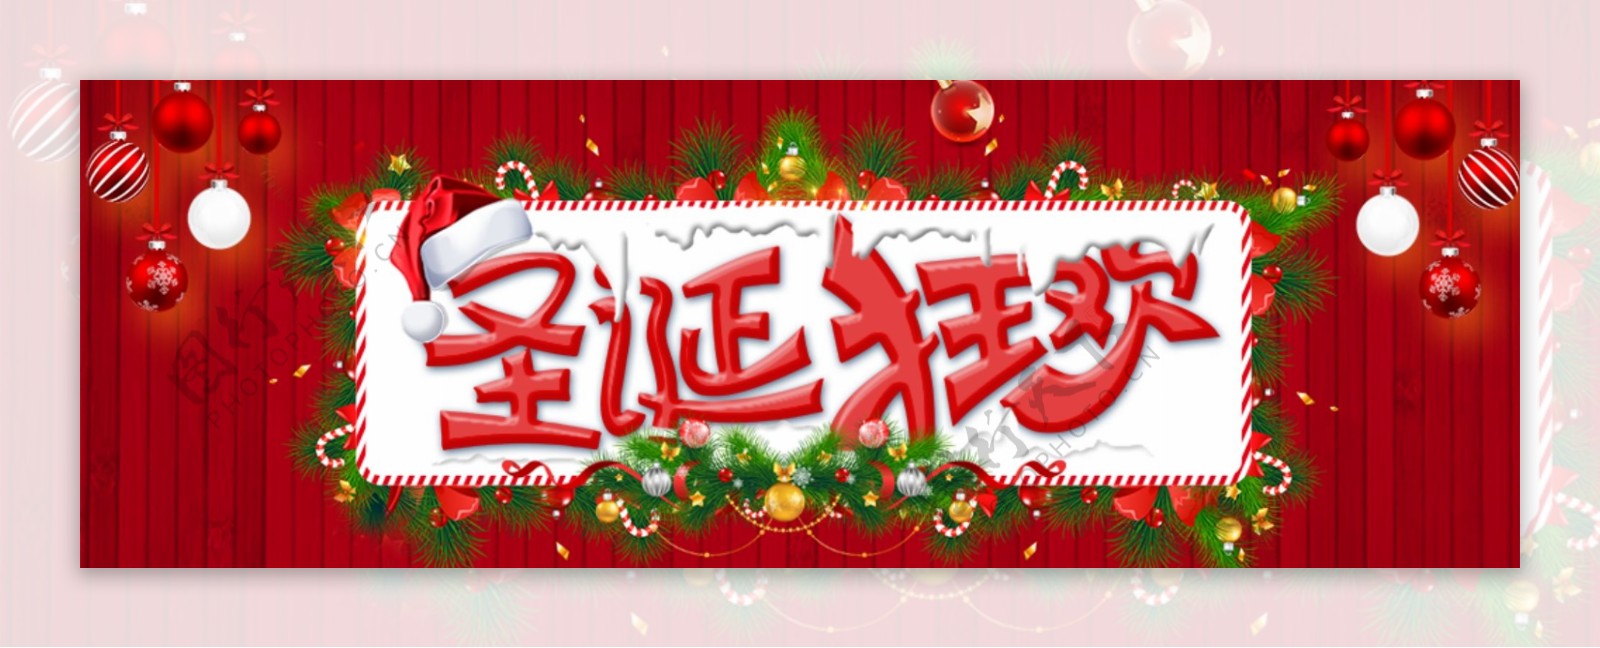 红色大气圣诞快乐圣诞节促销宣传海报